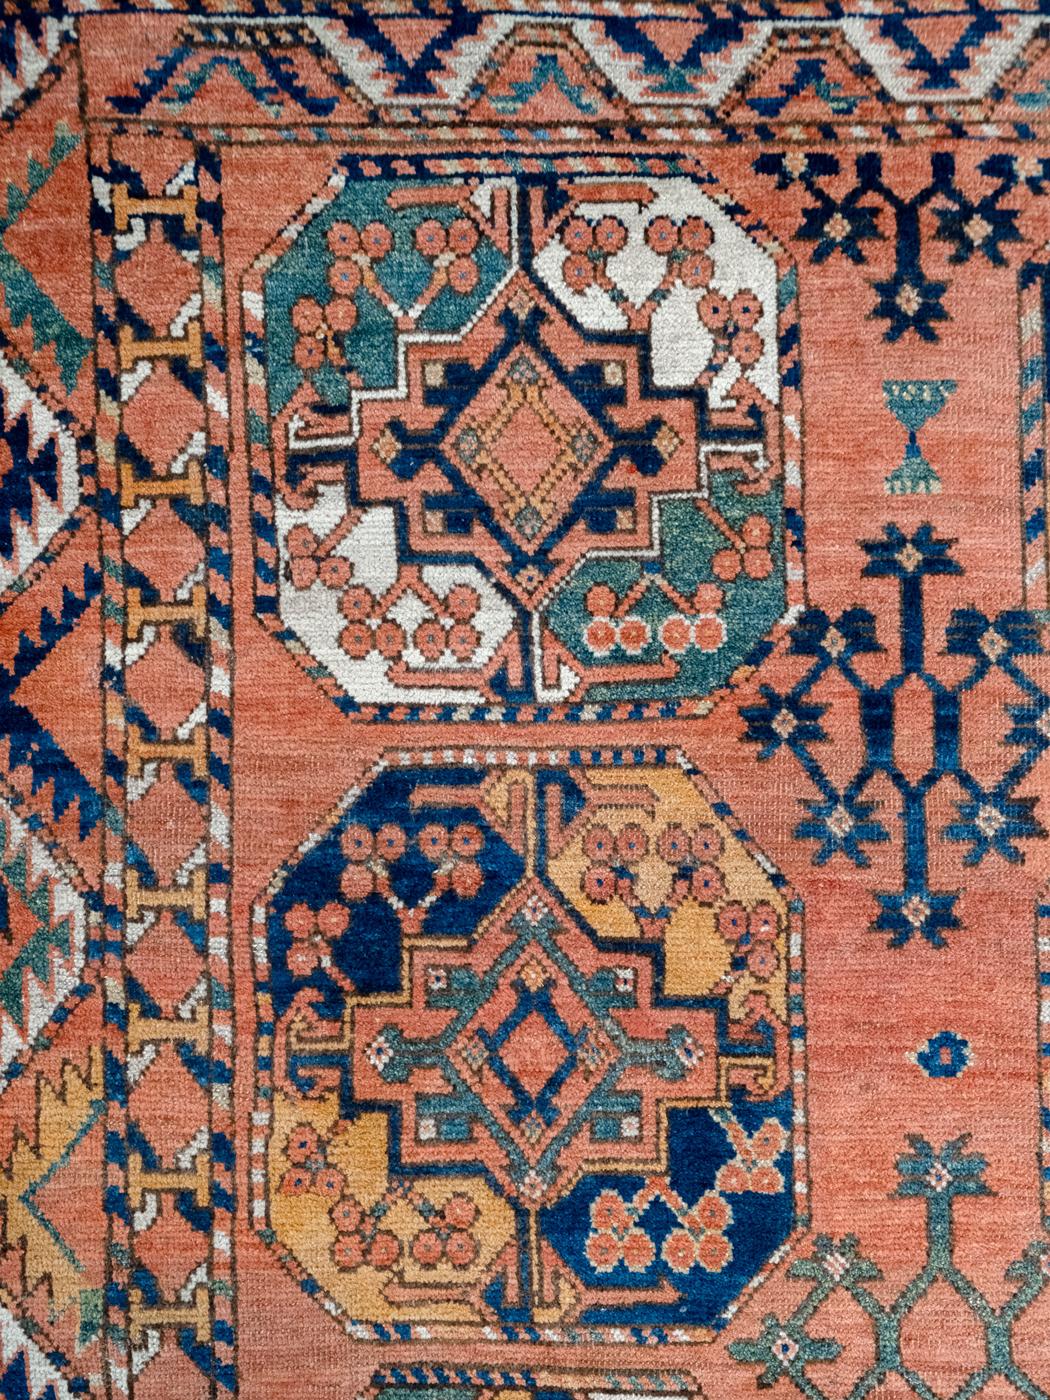 Ce tapis ancien persan Esari, tissé en Iran vers 1880, présente des tons vifs et audacieux de rose, de rouge, de vert, d'indigo, de crème, d'orange, de rose et de laine noire. Il mesure 7'2'' x 9''. Avec ses 18 grands médaillons colorés décorés de